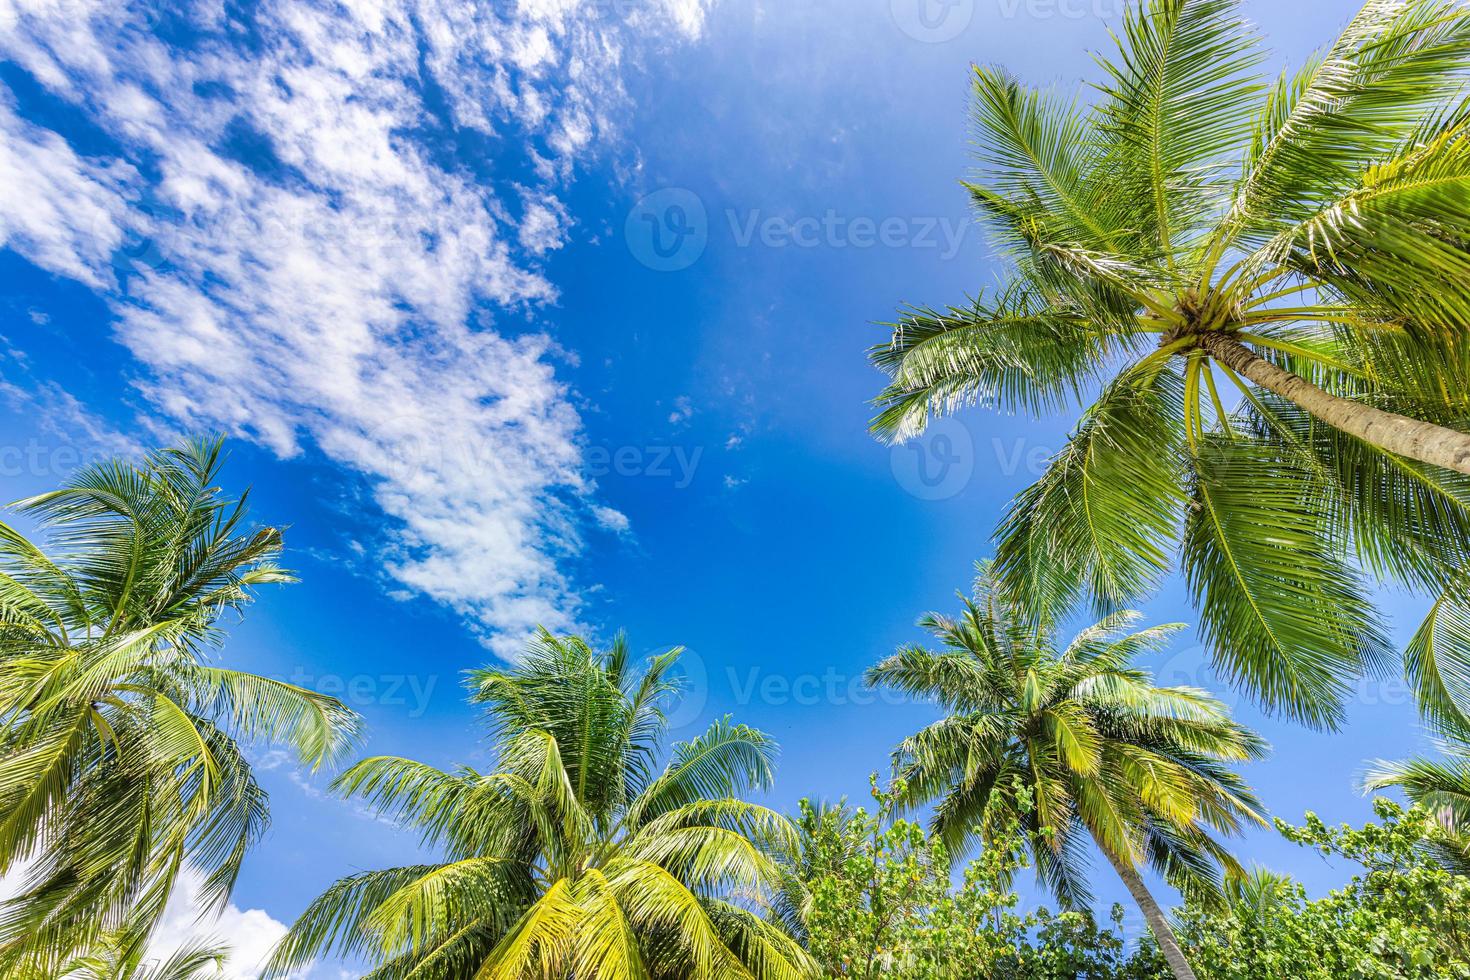 mooi bewolkt lucht landschap en groen palm bladeren. laag punt van visie, palm bomen tropisch Woud Bij blauw lucht achtergrond. zonnig eiland natuur achtergrond, kom tot rust vredig vrijheid natuurlijk toneel- foto